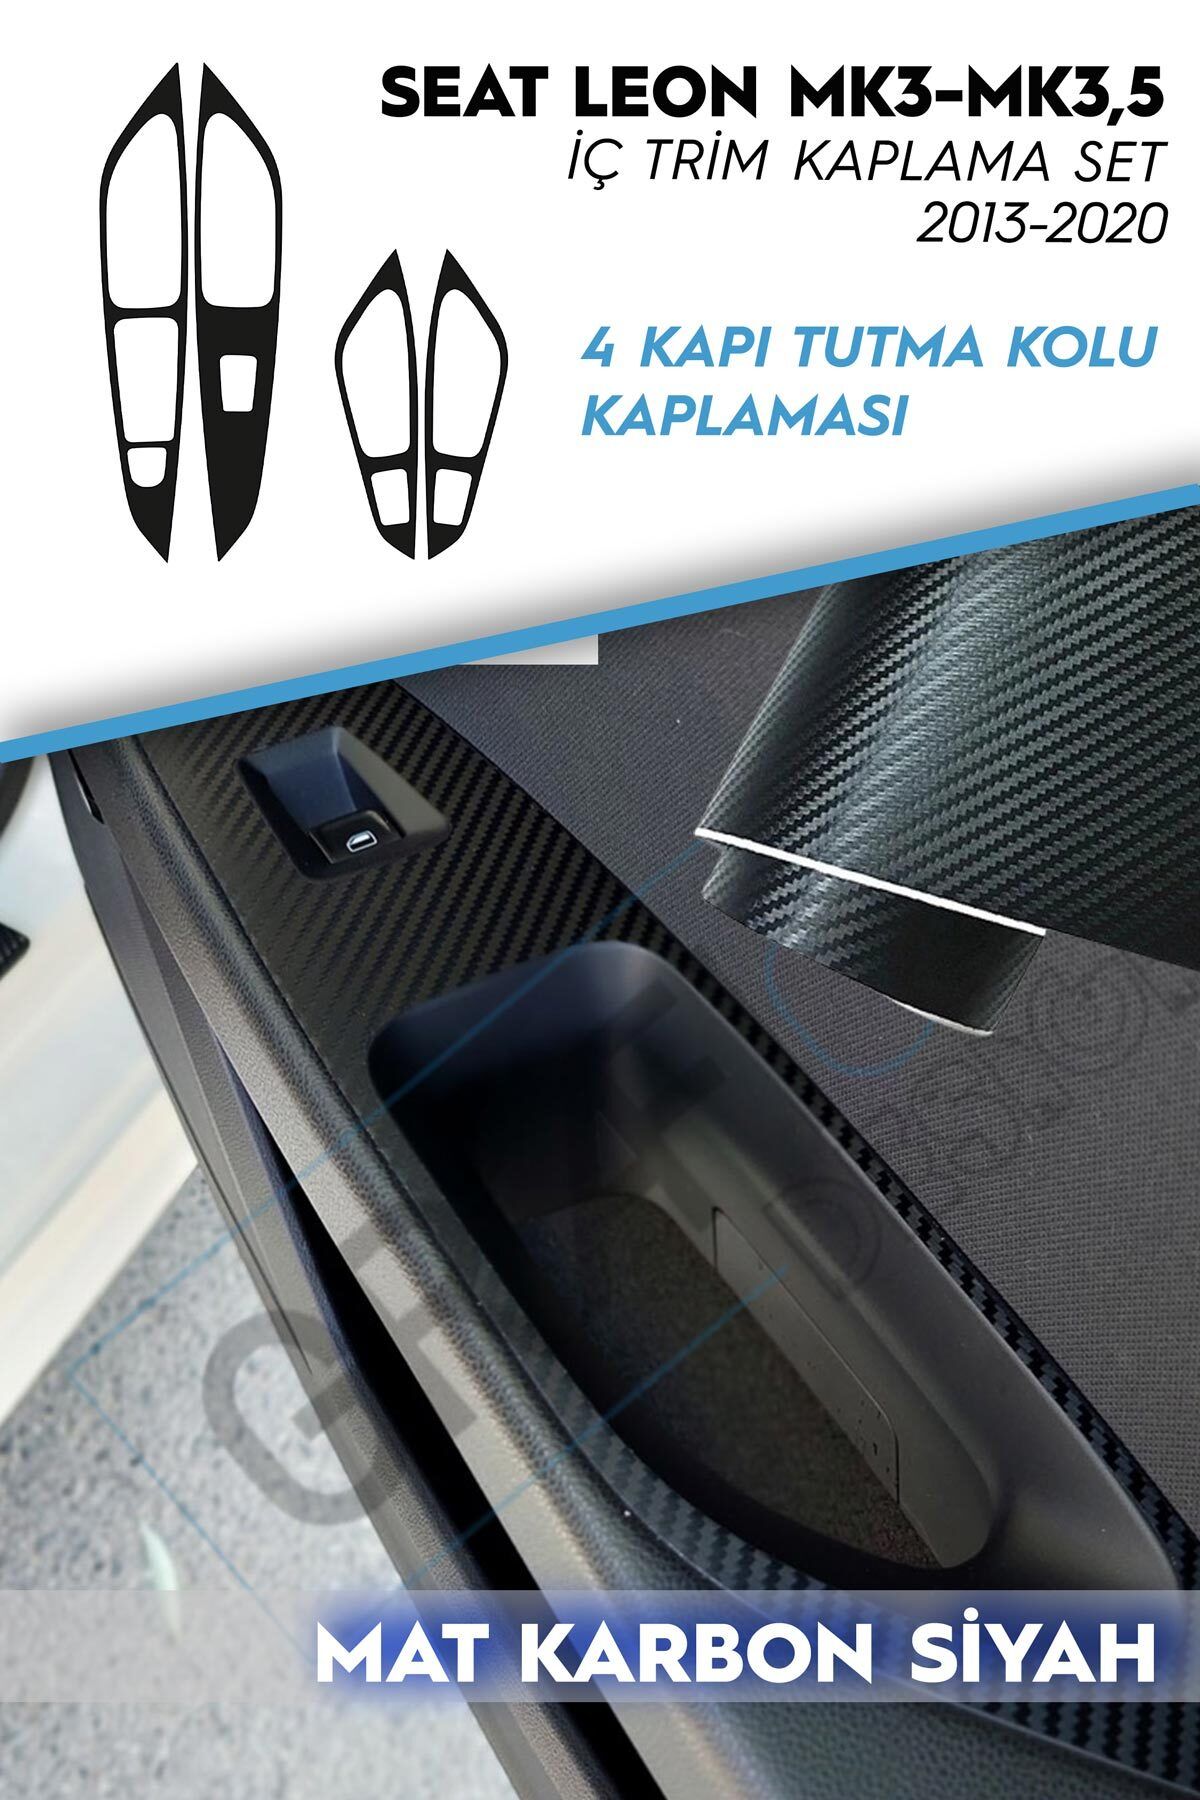 GRAFİCAR Seat Leon Mk3-3.5-2013-2020 Iç Trim Kaplama Sticker Seti- 4 Kapı Iç Tutma Kısımları-mat Karbon Siyah